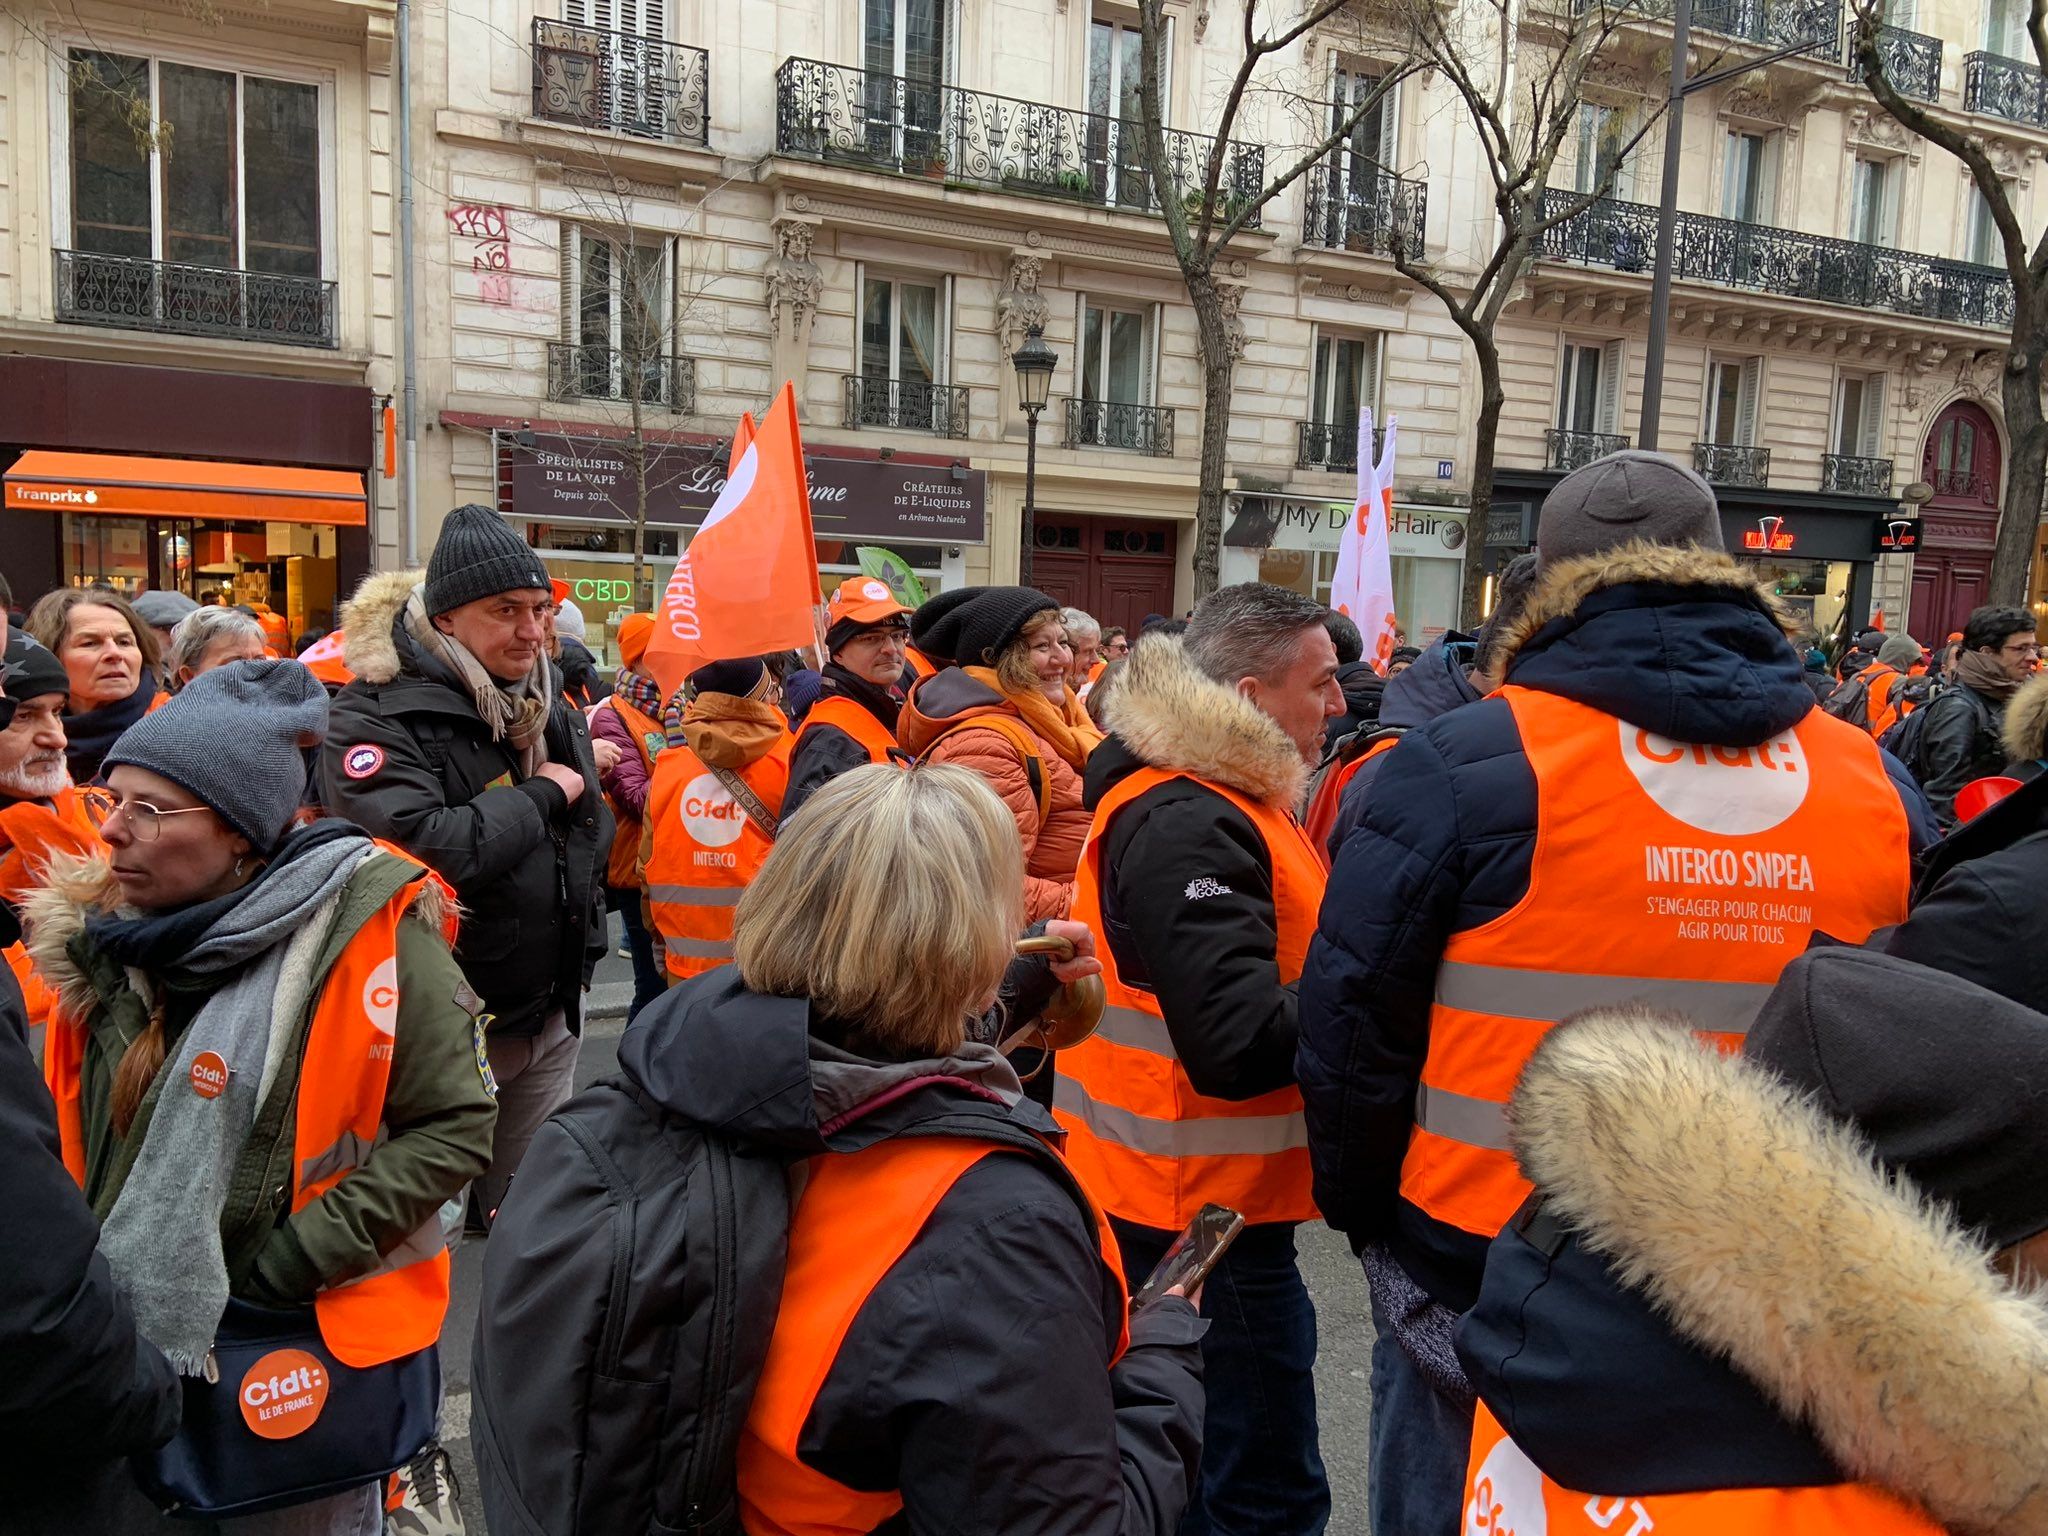 Francia se echa a la calle contra la reforma de pensiones: dice 'no' a jubilarse a los 64 años